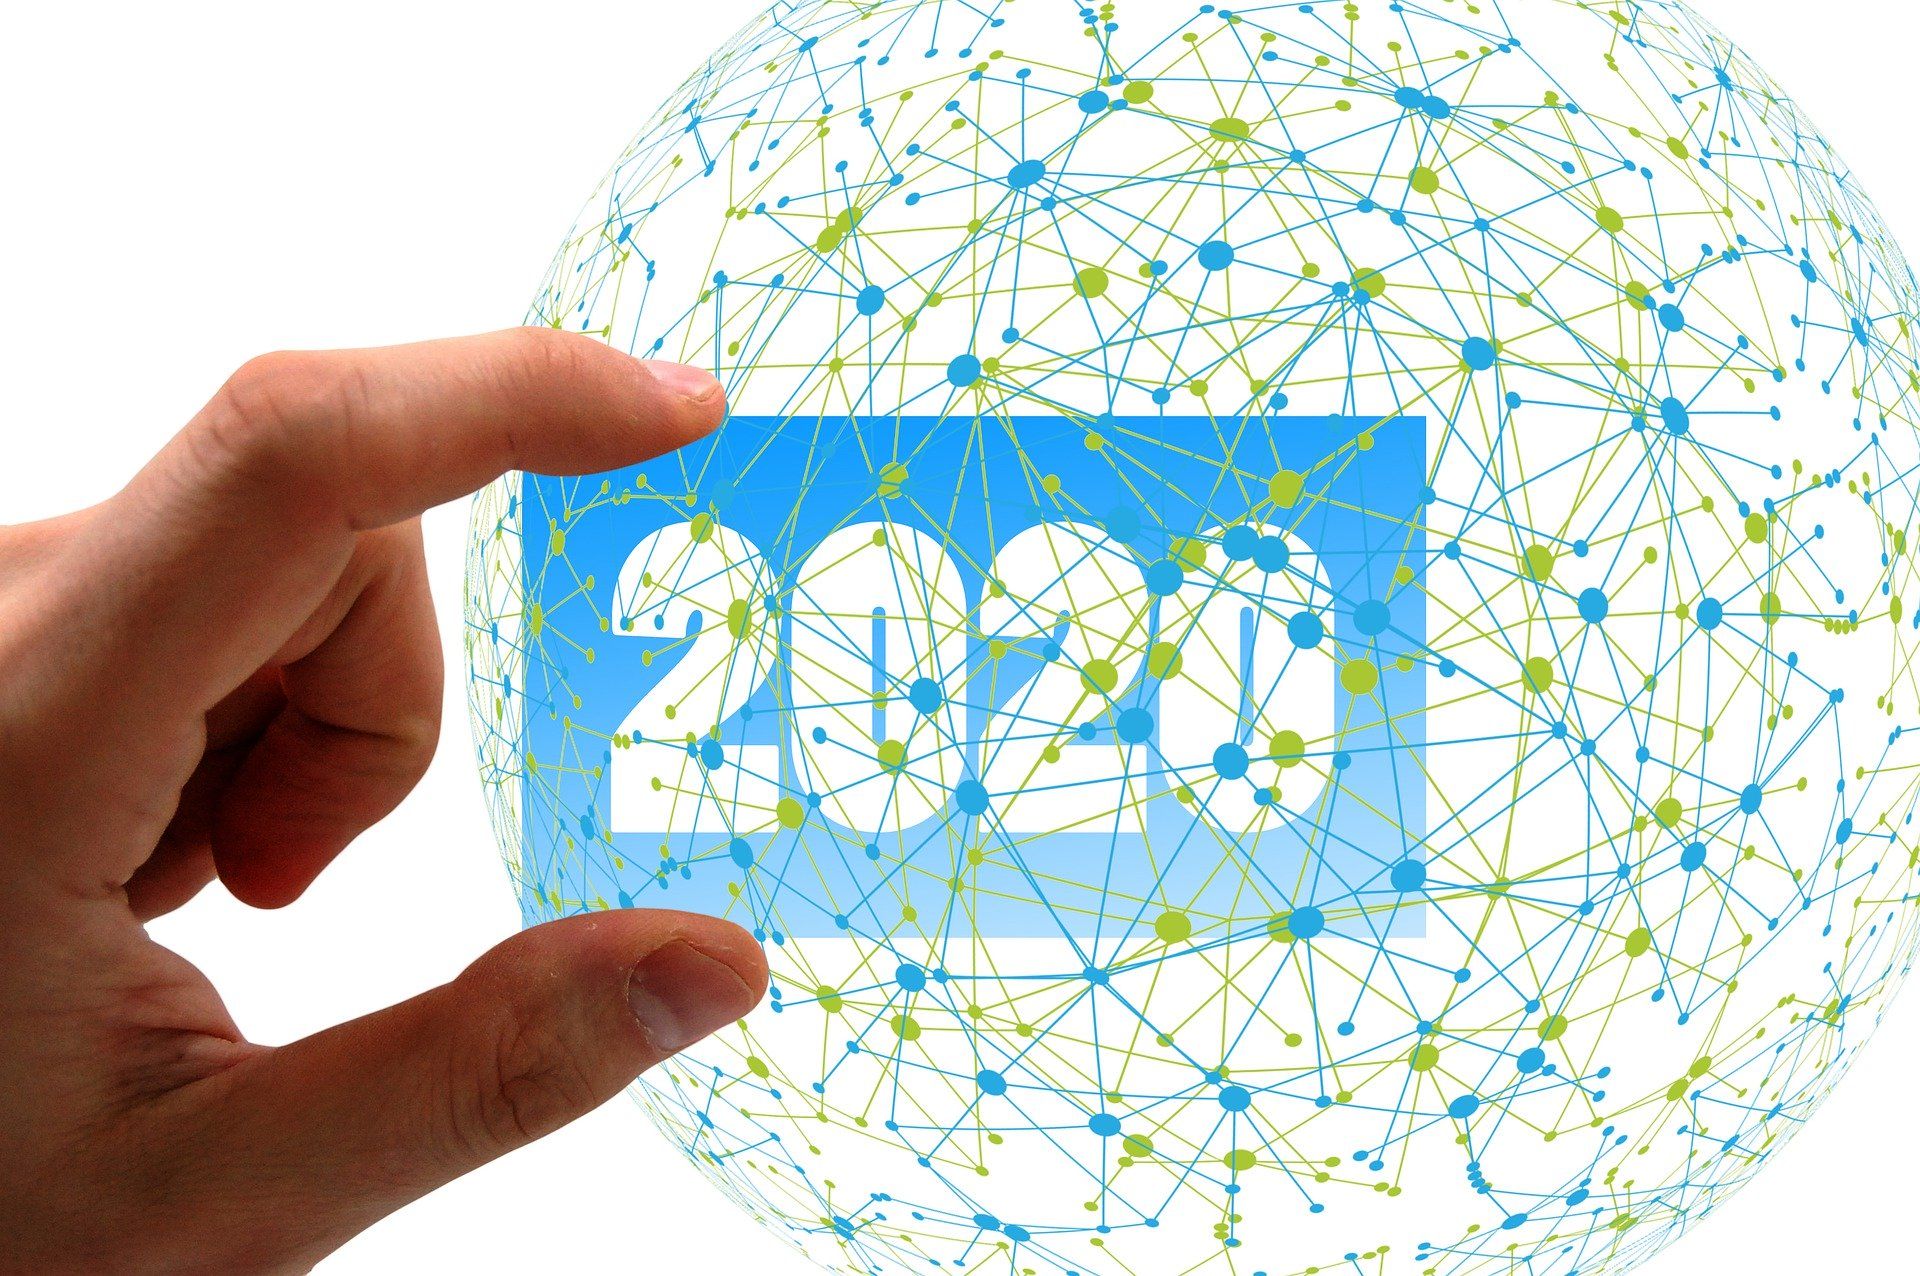                               Drishtikone’s Annual Predictions for 2020                             
                              